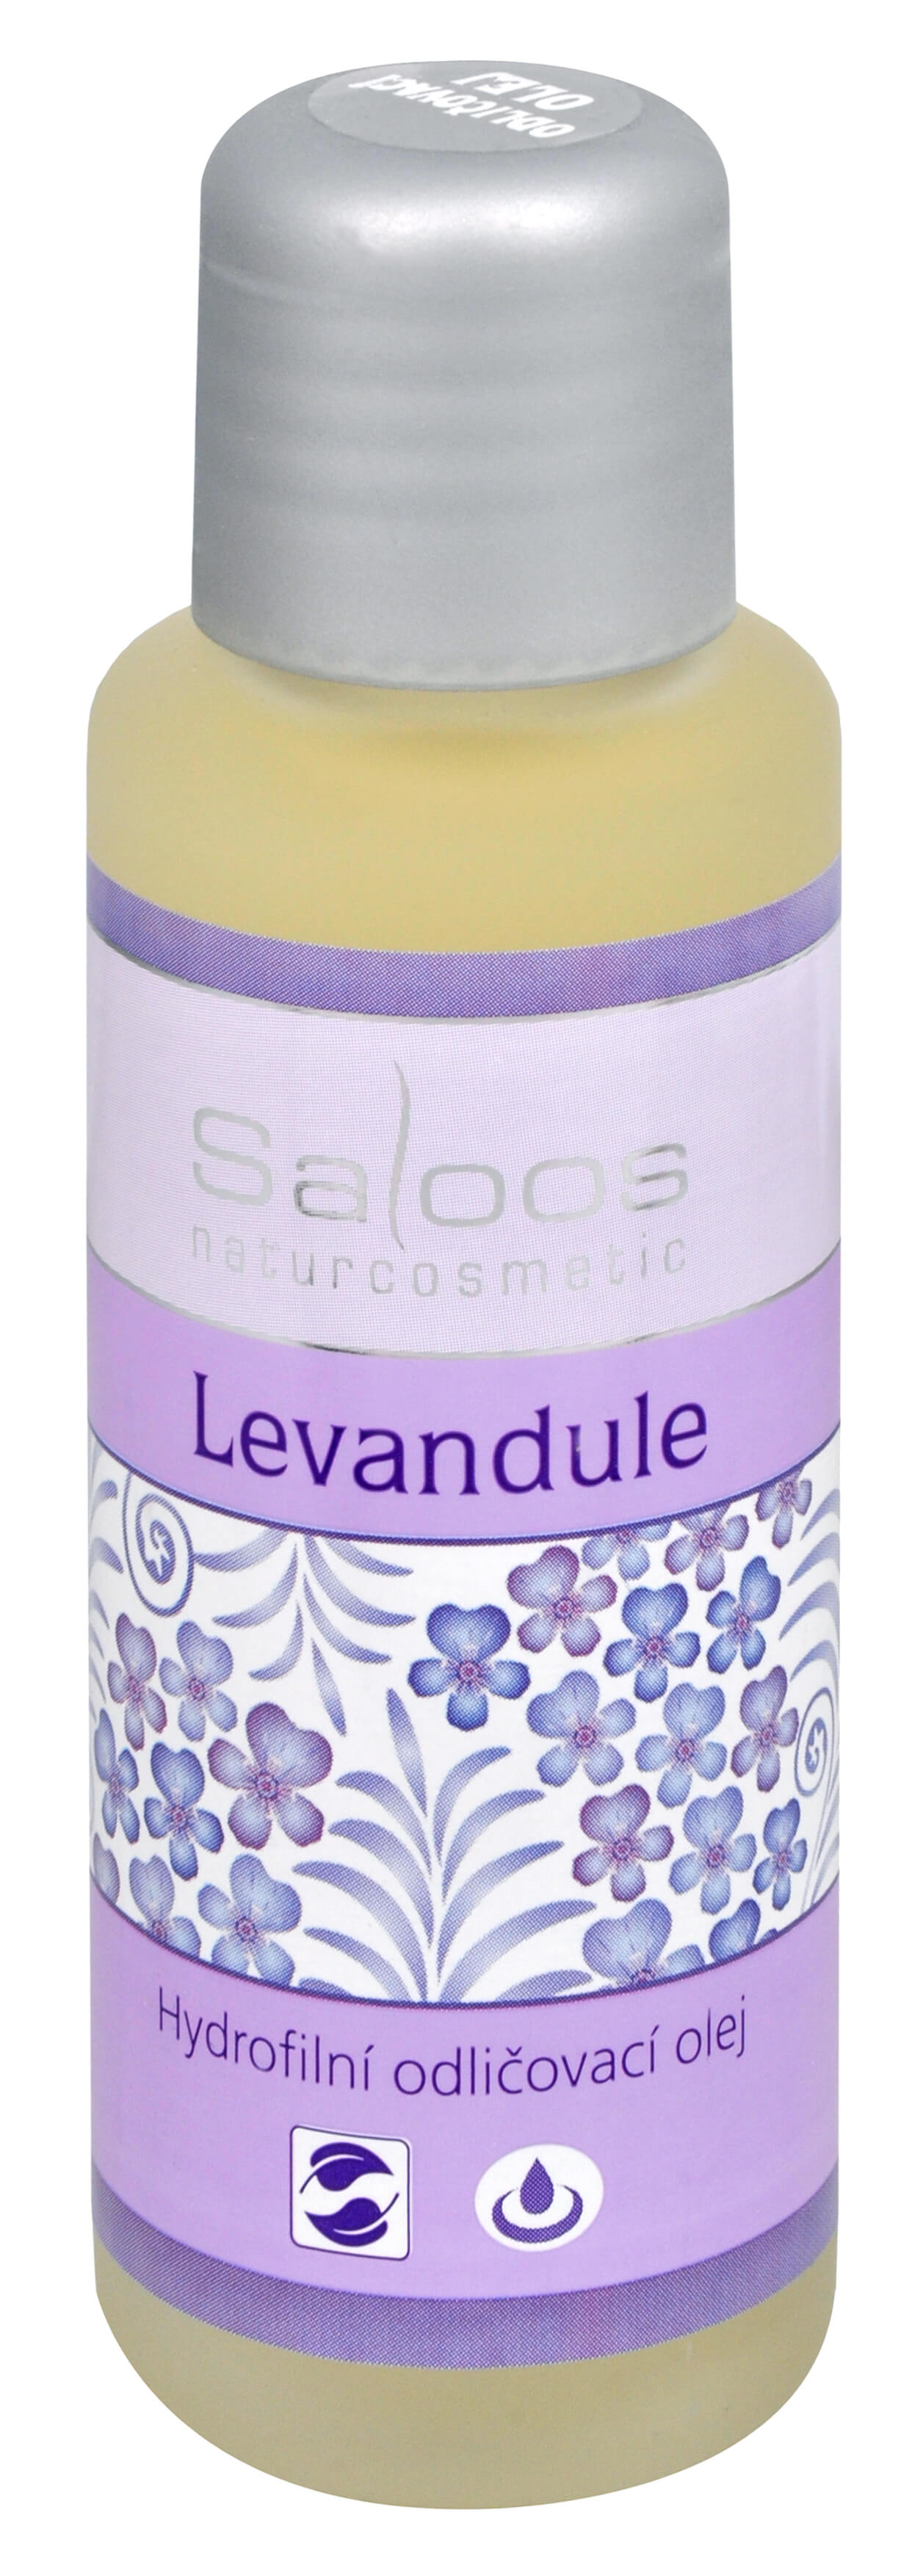 Zobrazit detail výrobku Saloos Hydrofilní odličovací olej - Levandule 200 ml